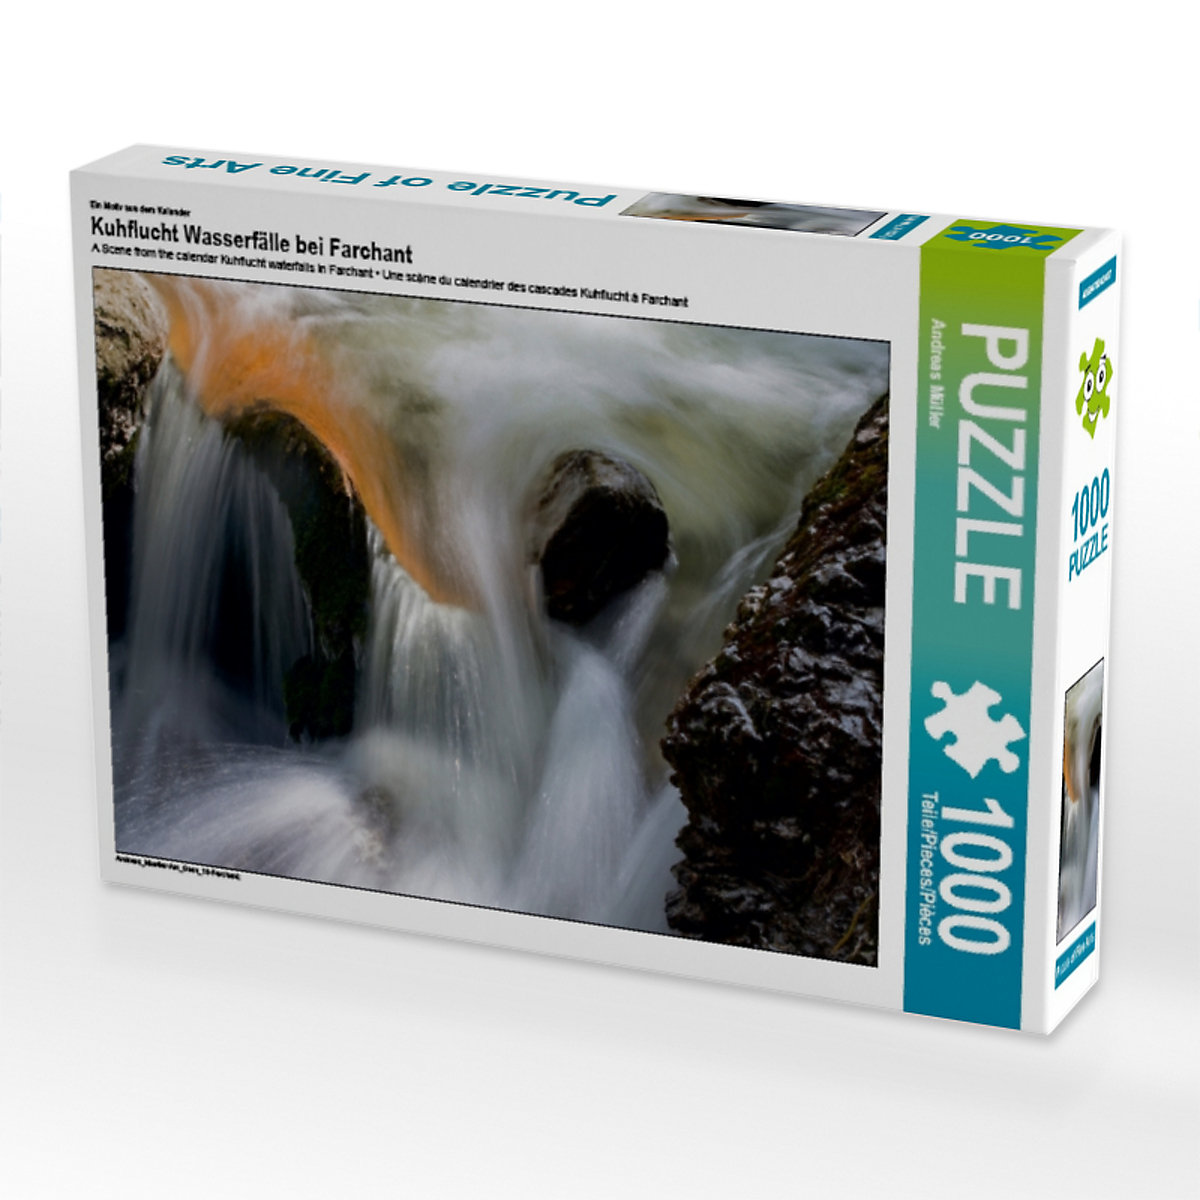 CALVENDO® Puzzle CALVENDO Puzzle Kuhflucht Wasserfälle bei Farchant 1000 Teile Foto-Puzzle für glückliche Stunden